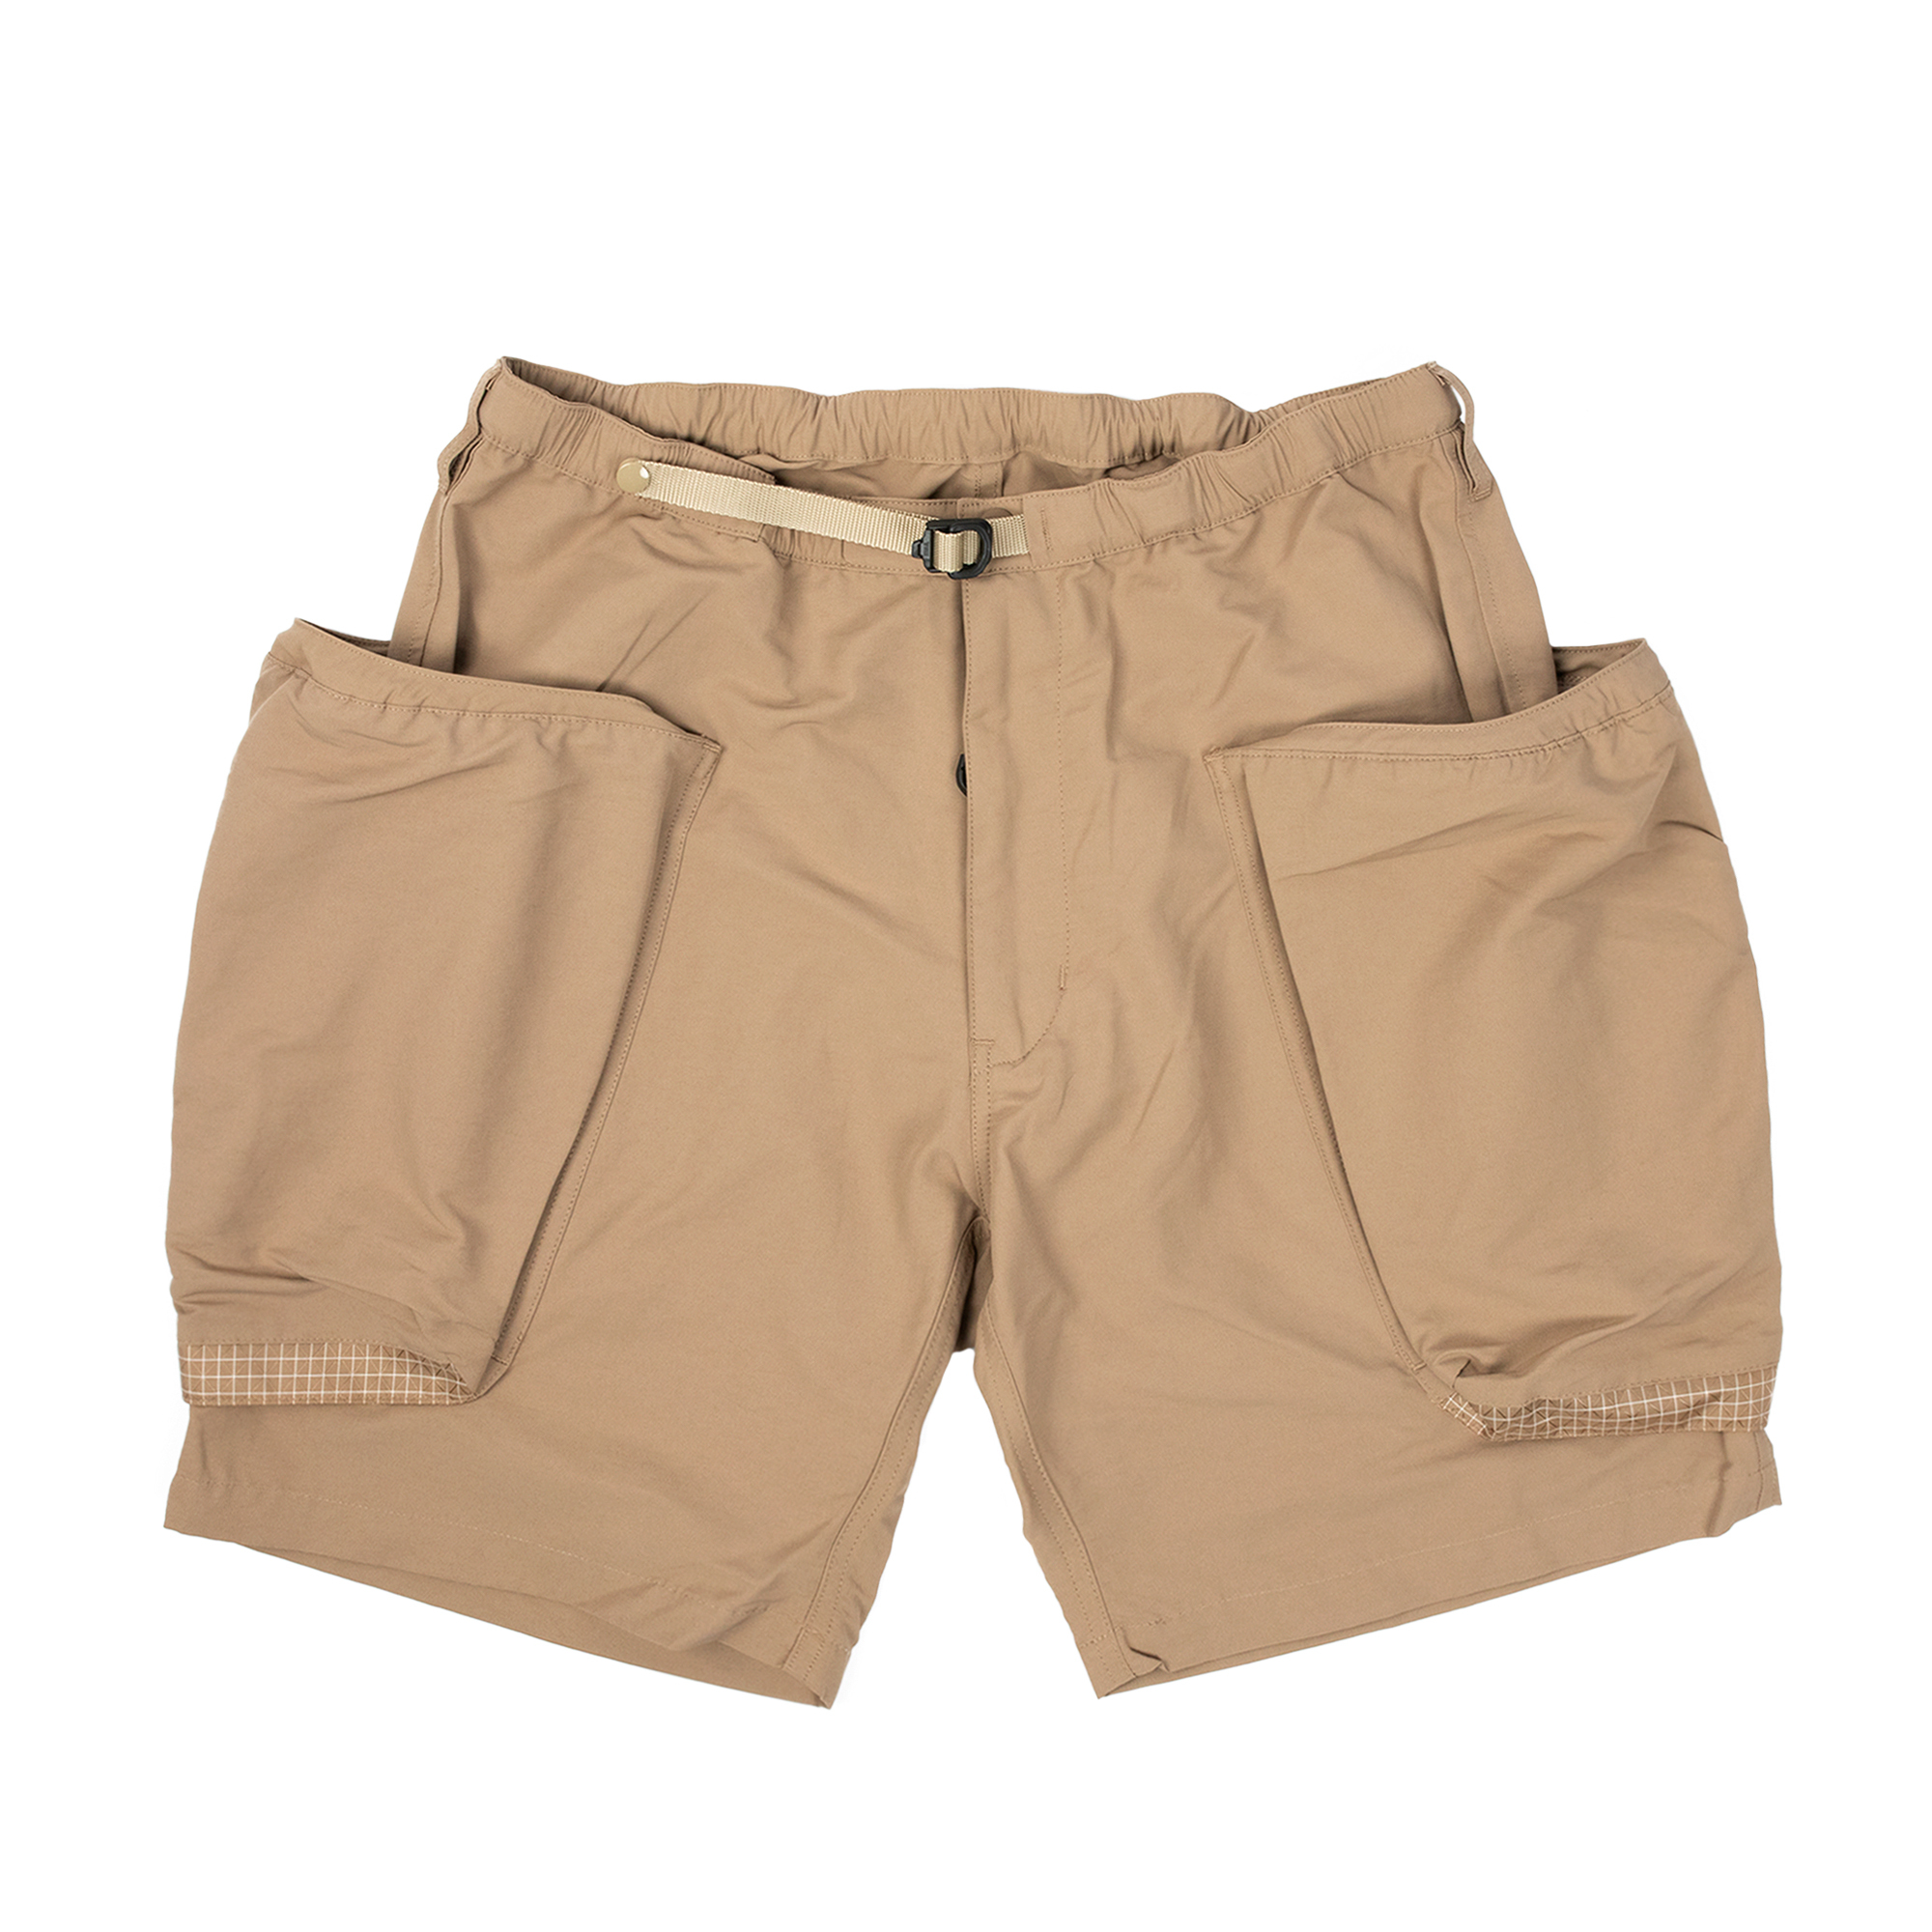 Comfy Outdoor Garment - Activity Shorts (Tan)